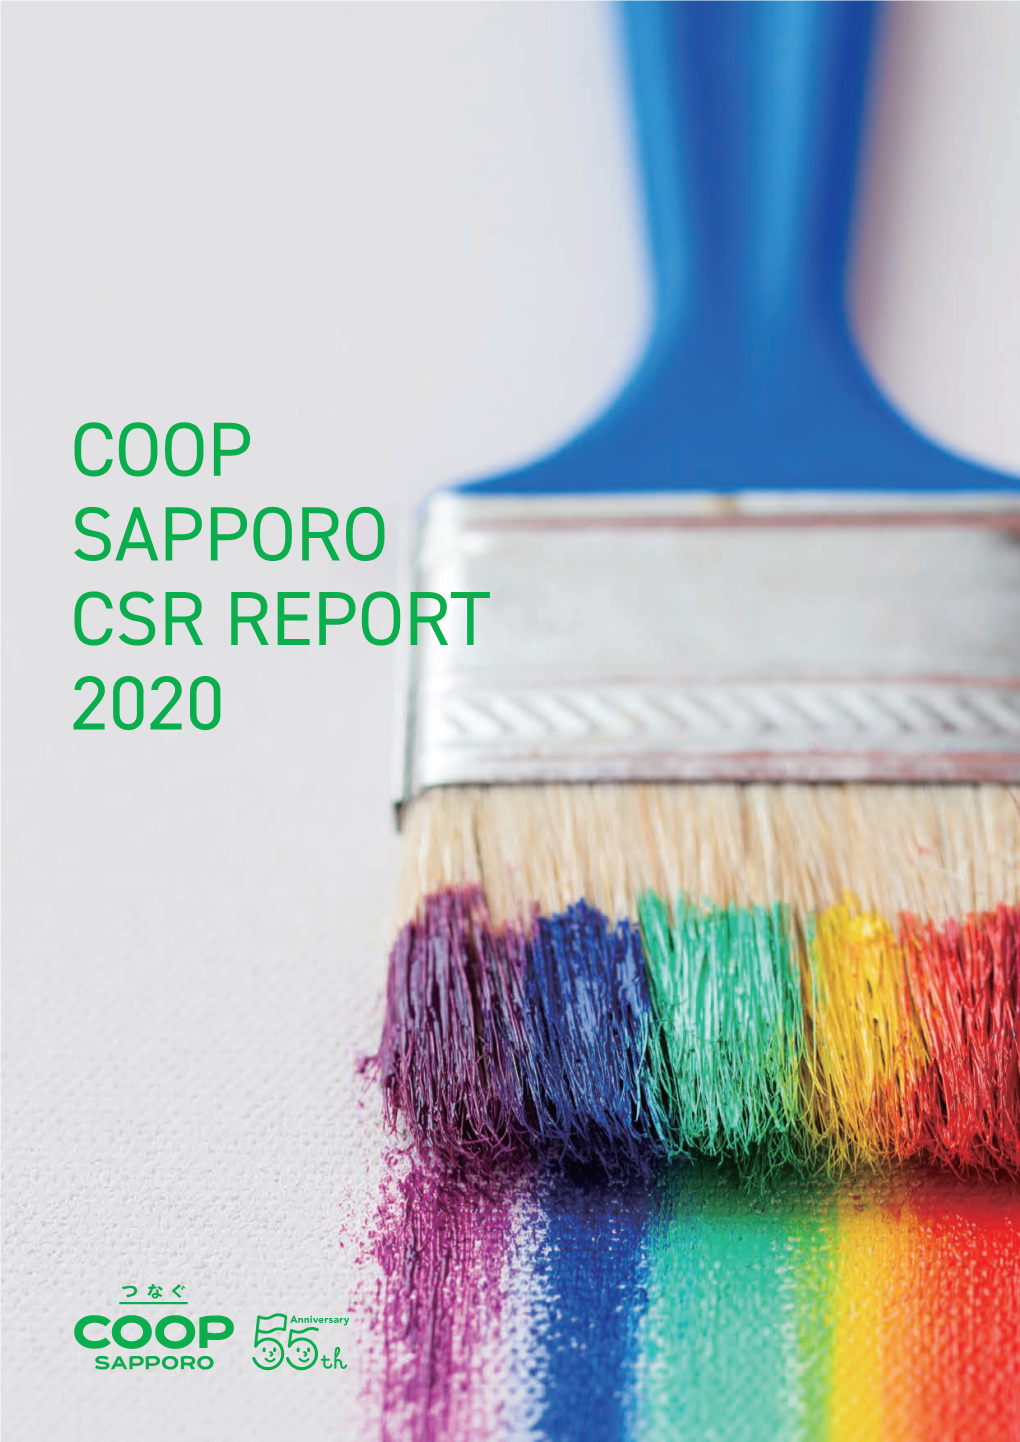 Coop Sapporo Csr Report 2020 Coop Sapporo Csr Report 2020